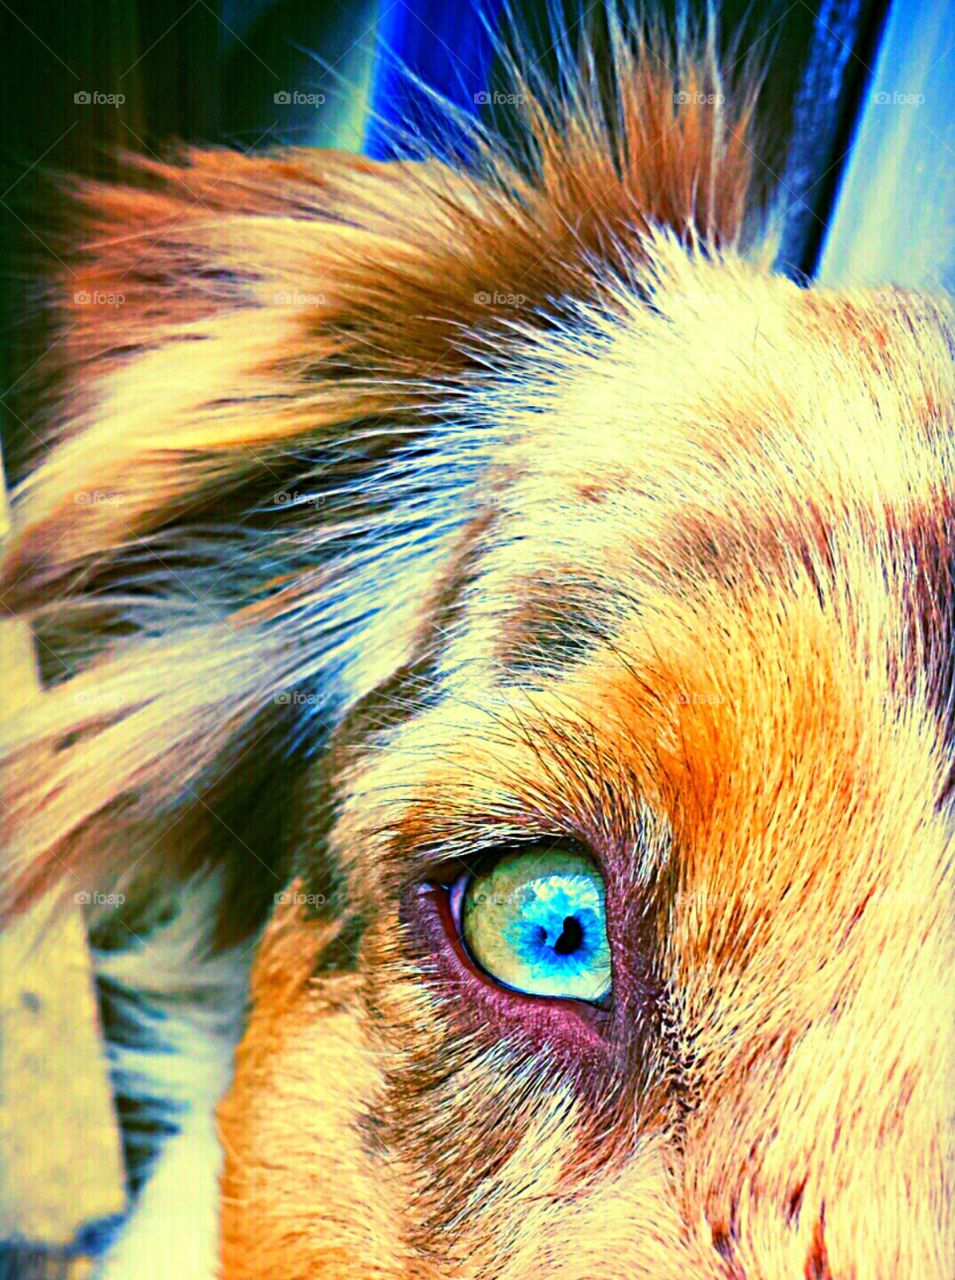 Dog eye portrait